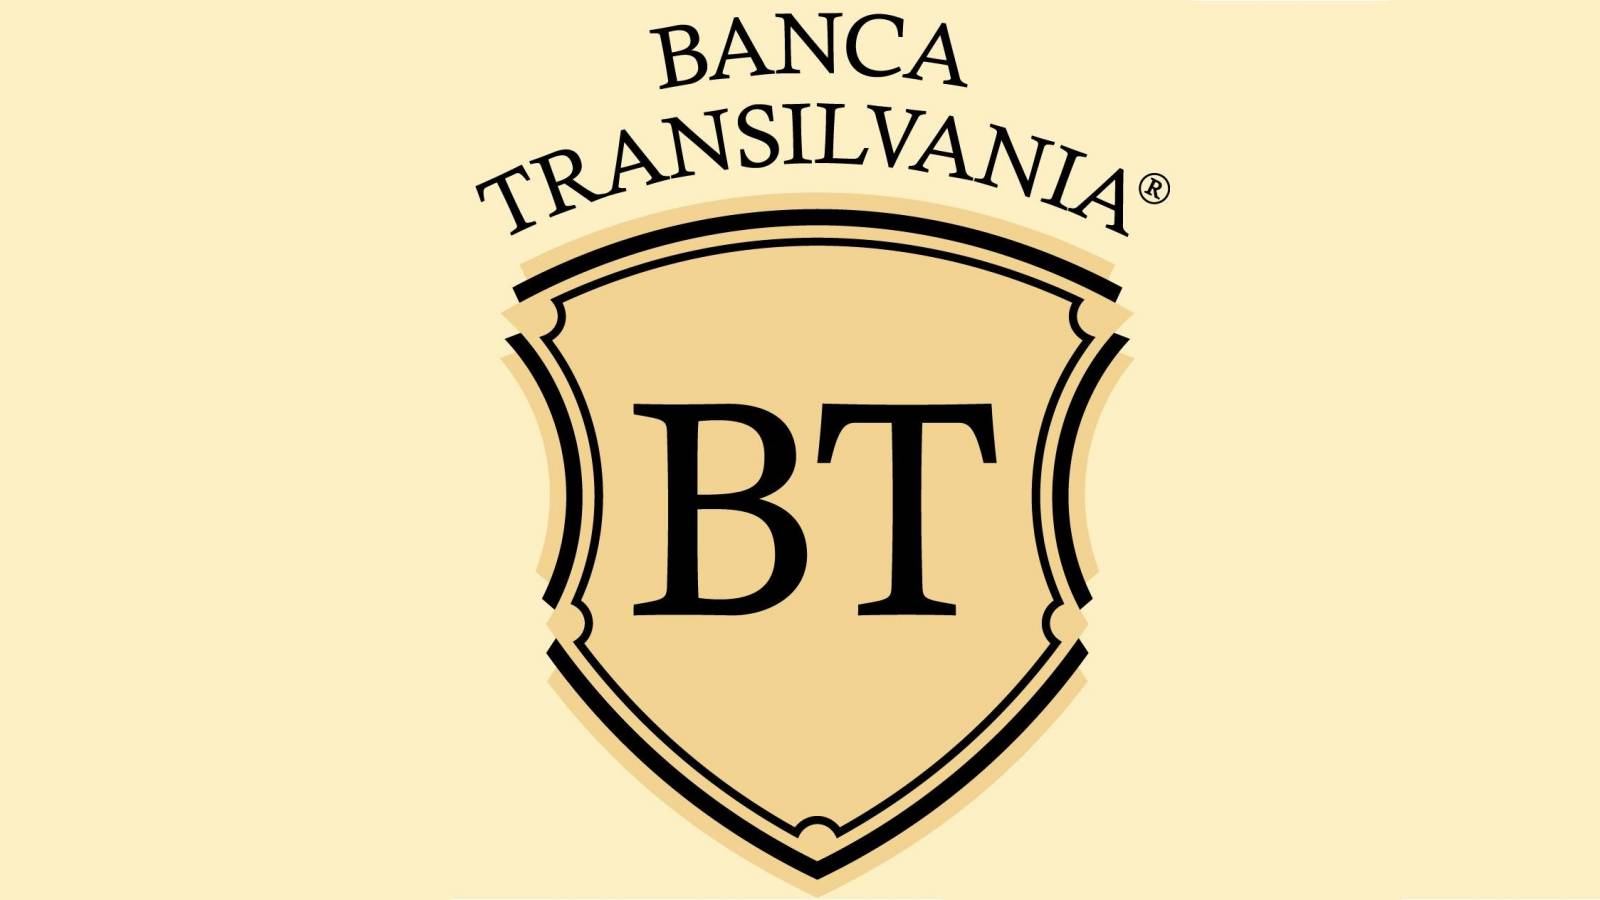 Oficjalna informacja BANCA Transilvania LAST MOMENT wysyłana do klientów w całej Rumunii